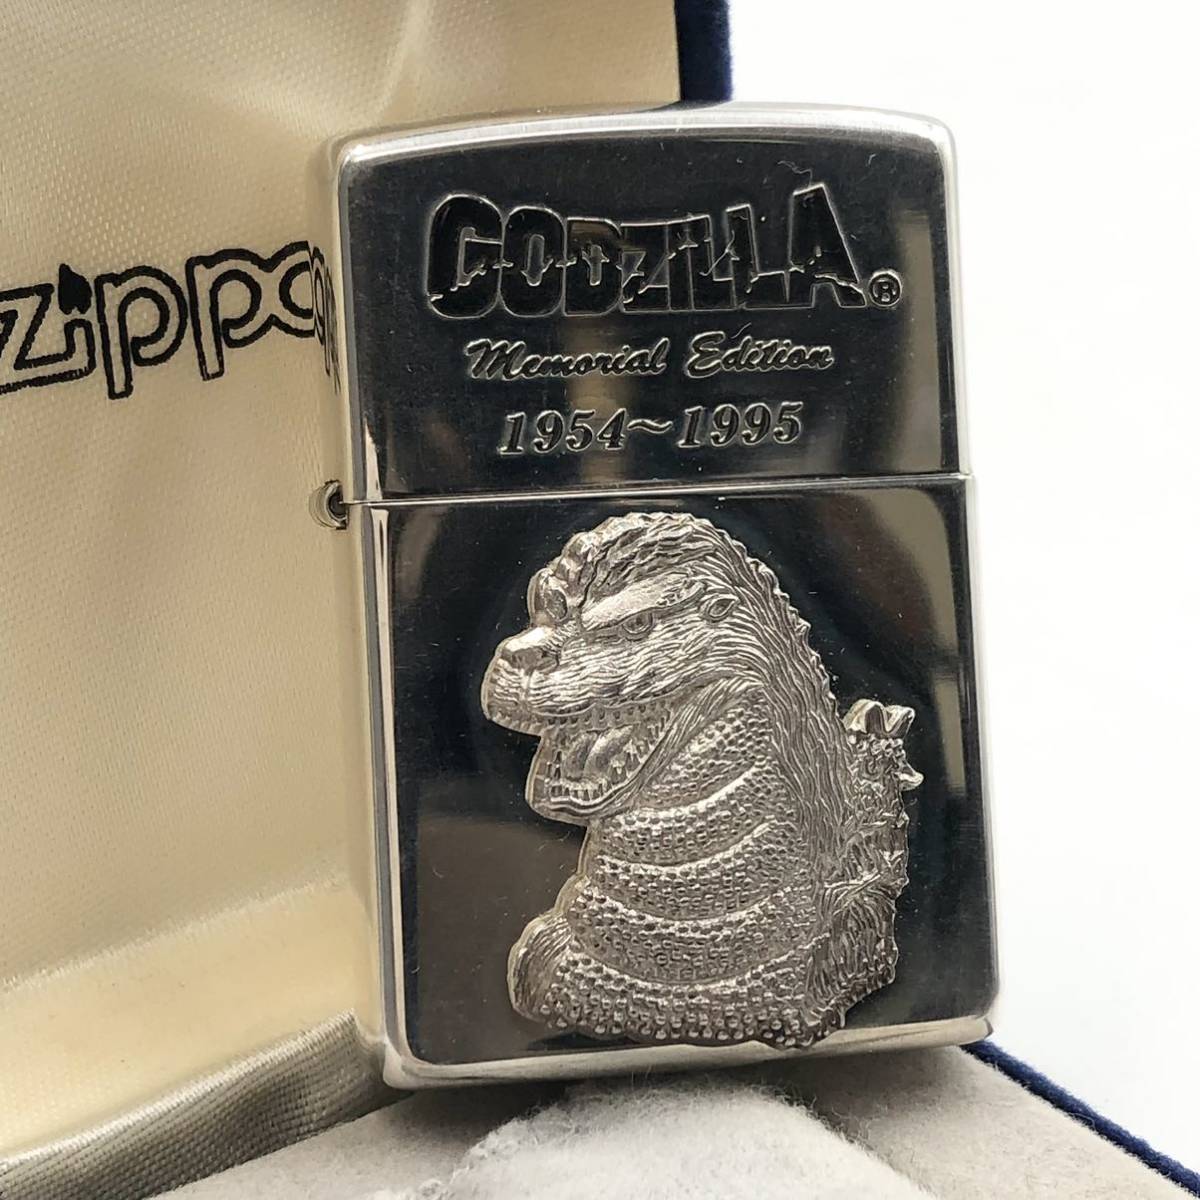 ヤフオク! -「zippo godzilla」の落札相場・落札価格